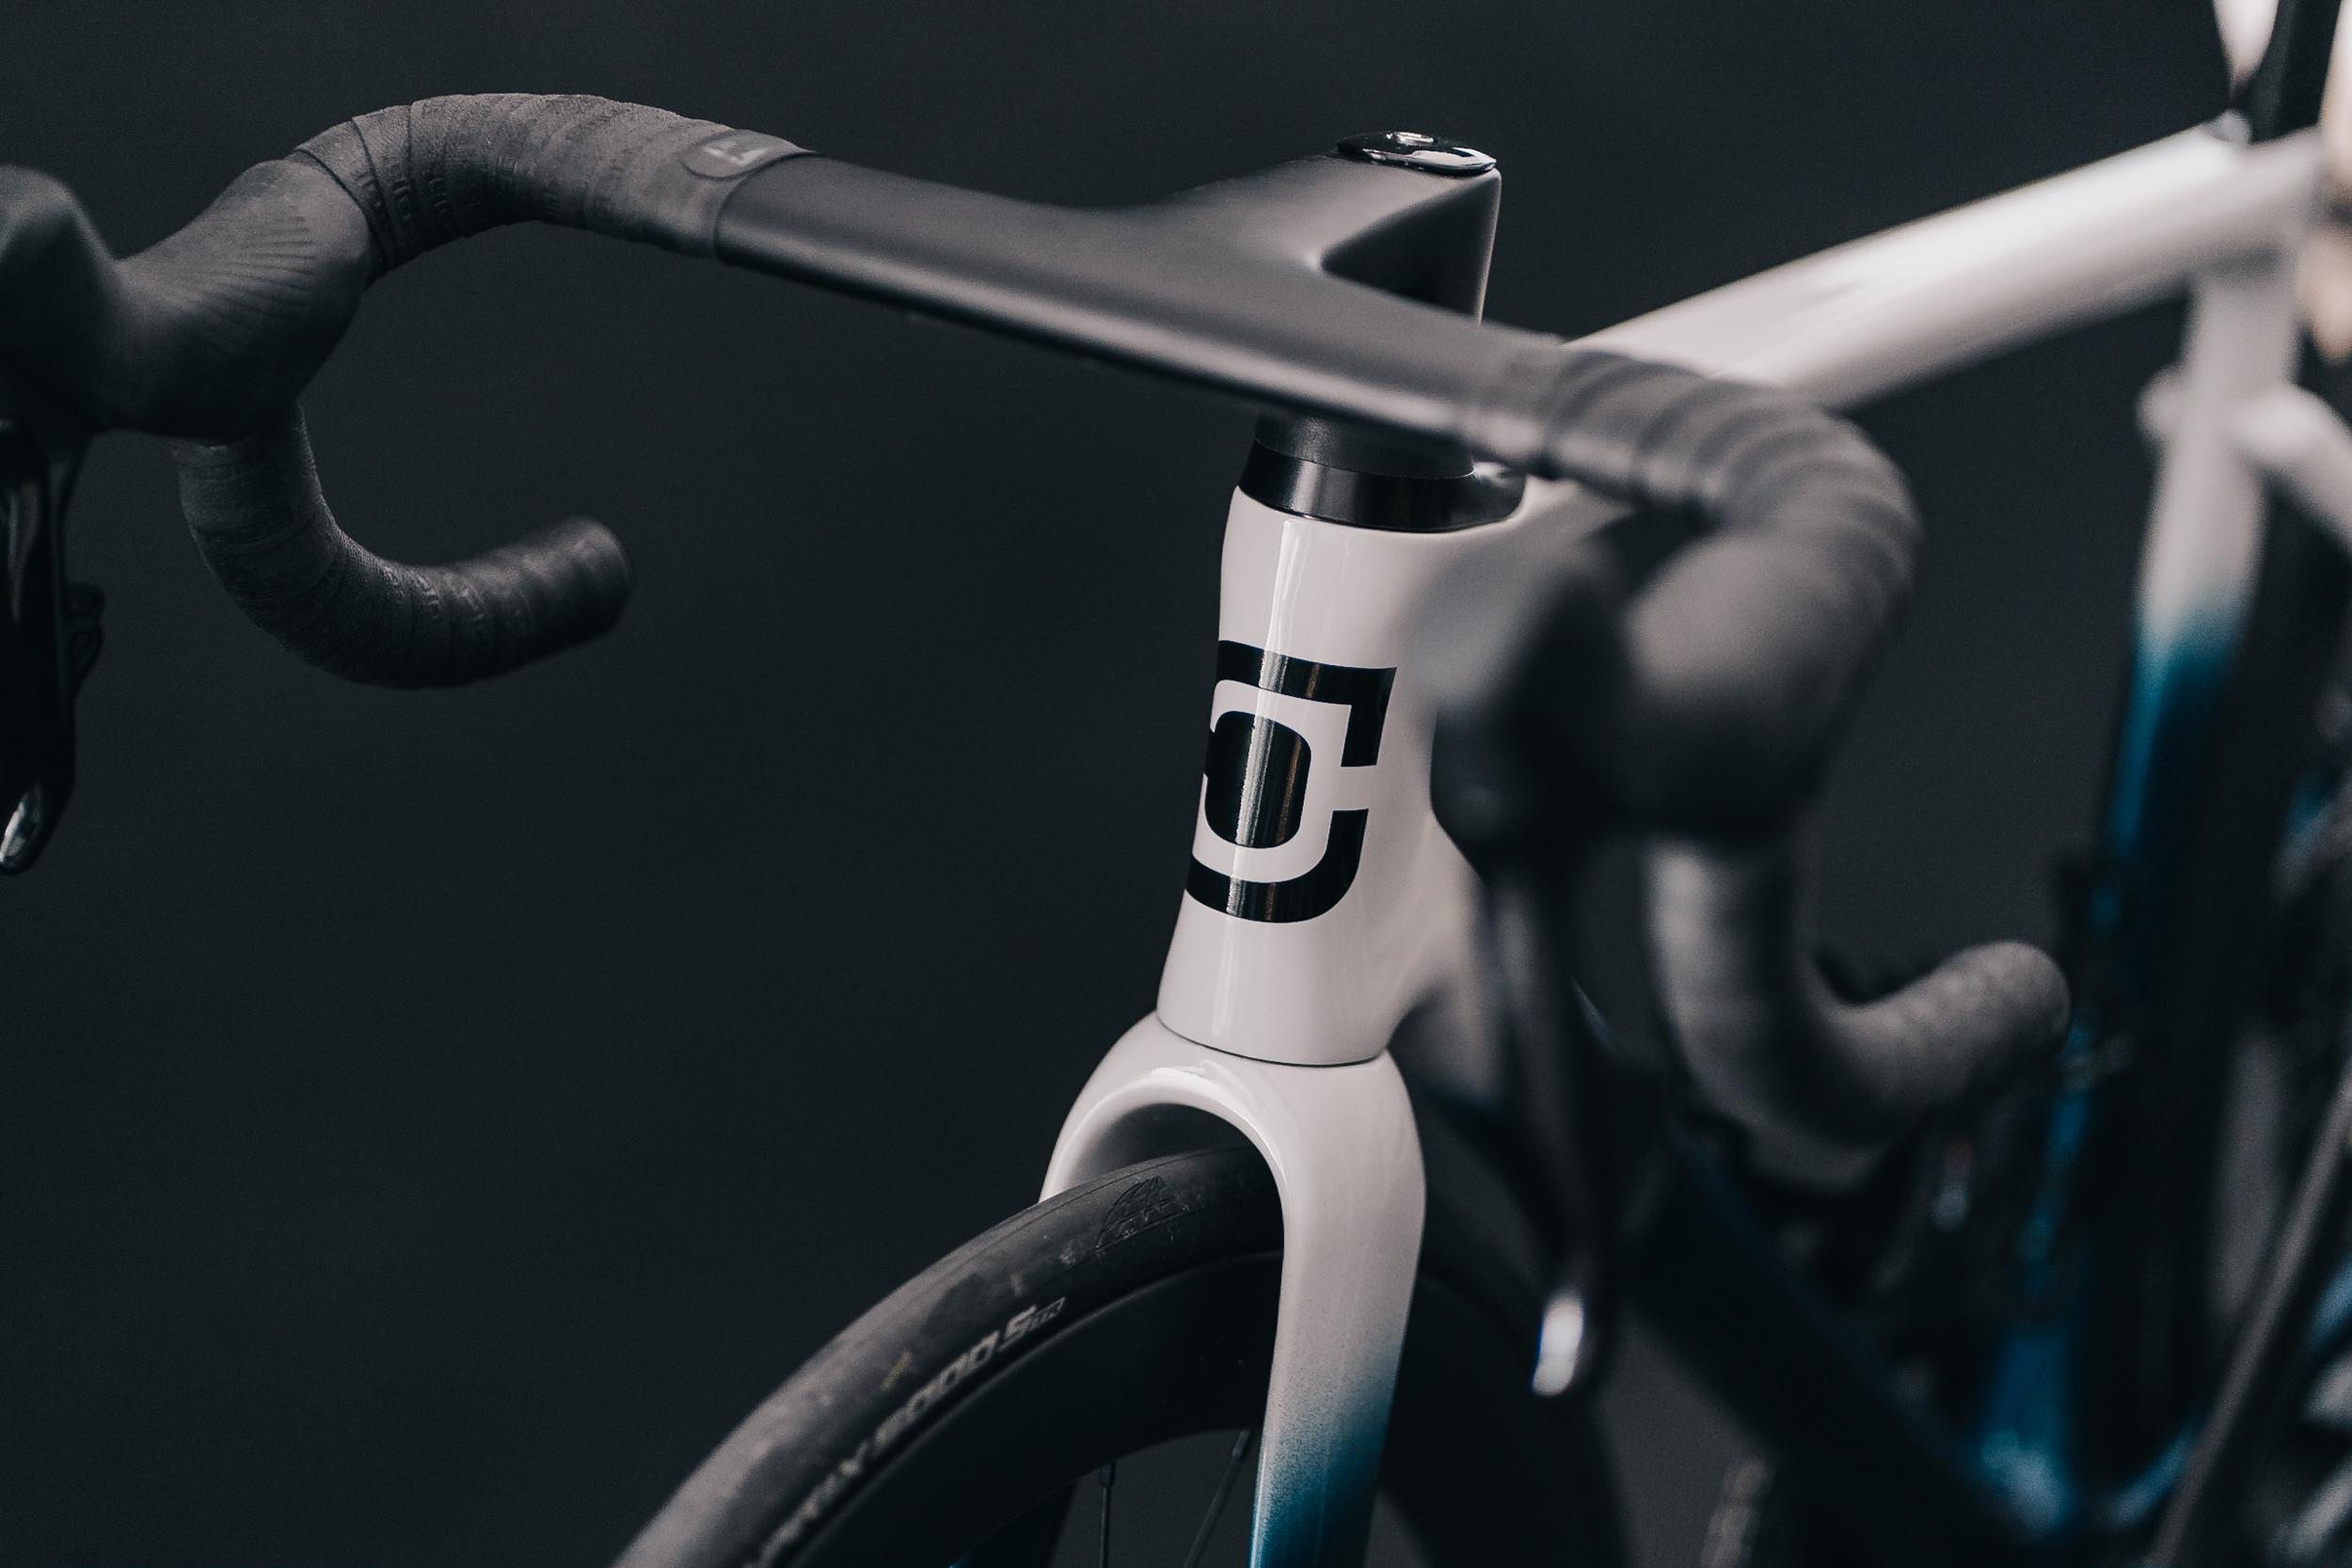 Wählen Sie CS Bikes für ein rundum Paket aus modernster Technologie, erstklassigem Handwerk und maßgeschneiderter Passform. Kompromisslos in Bezug auf Qualität und Stil – entfesseln Sie das volle Potenzial Ihrer Fahrt mit unserem Carbon-Finishing-Kit.